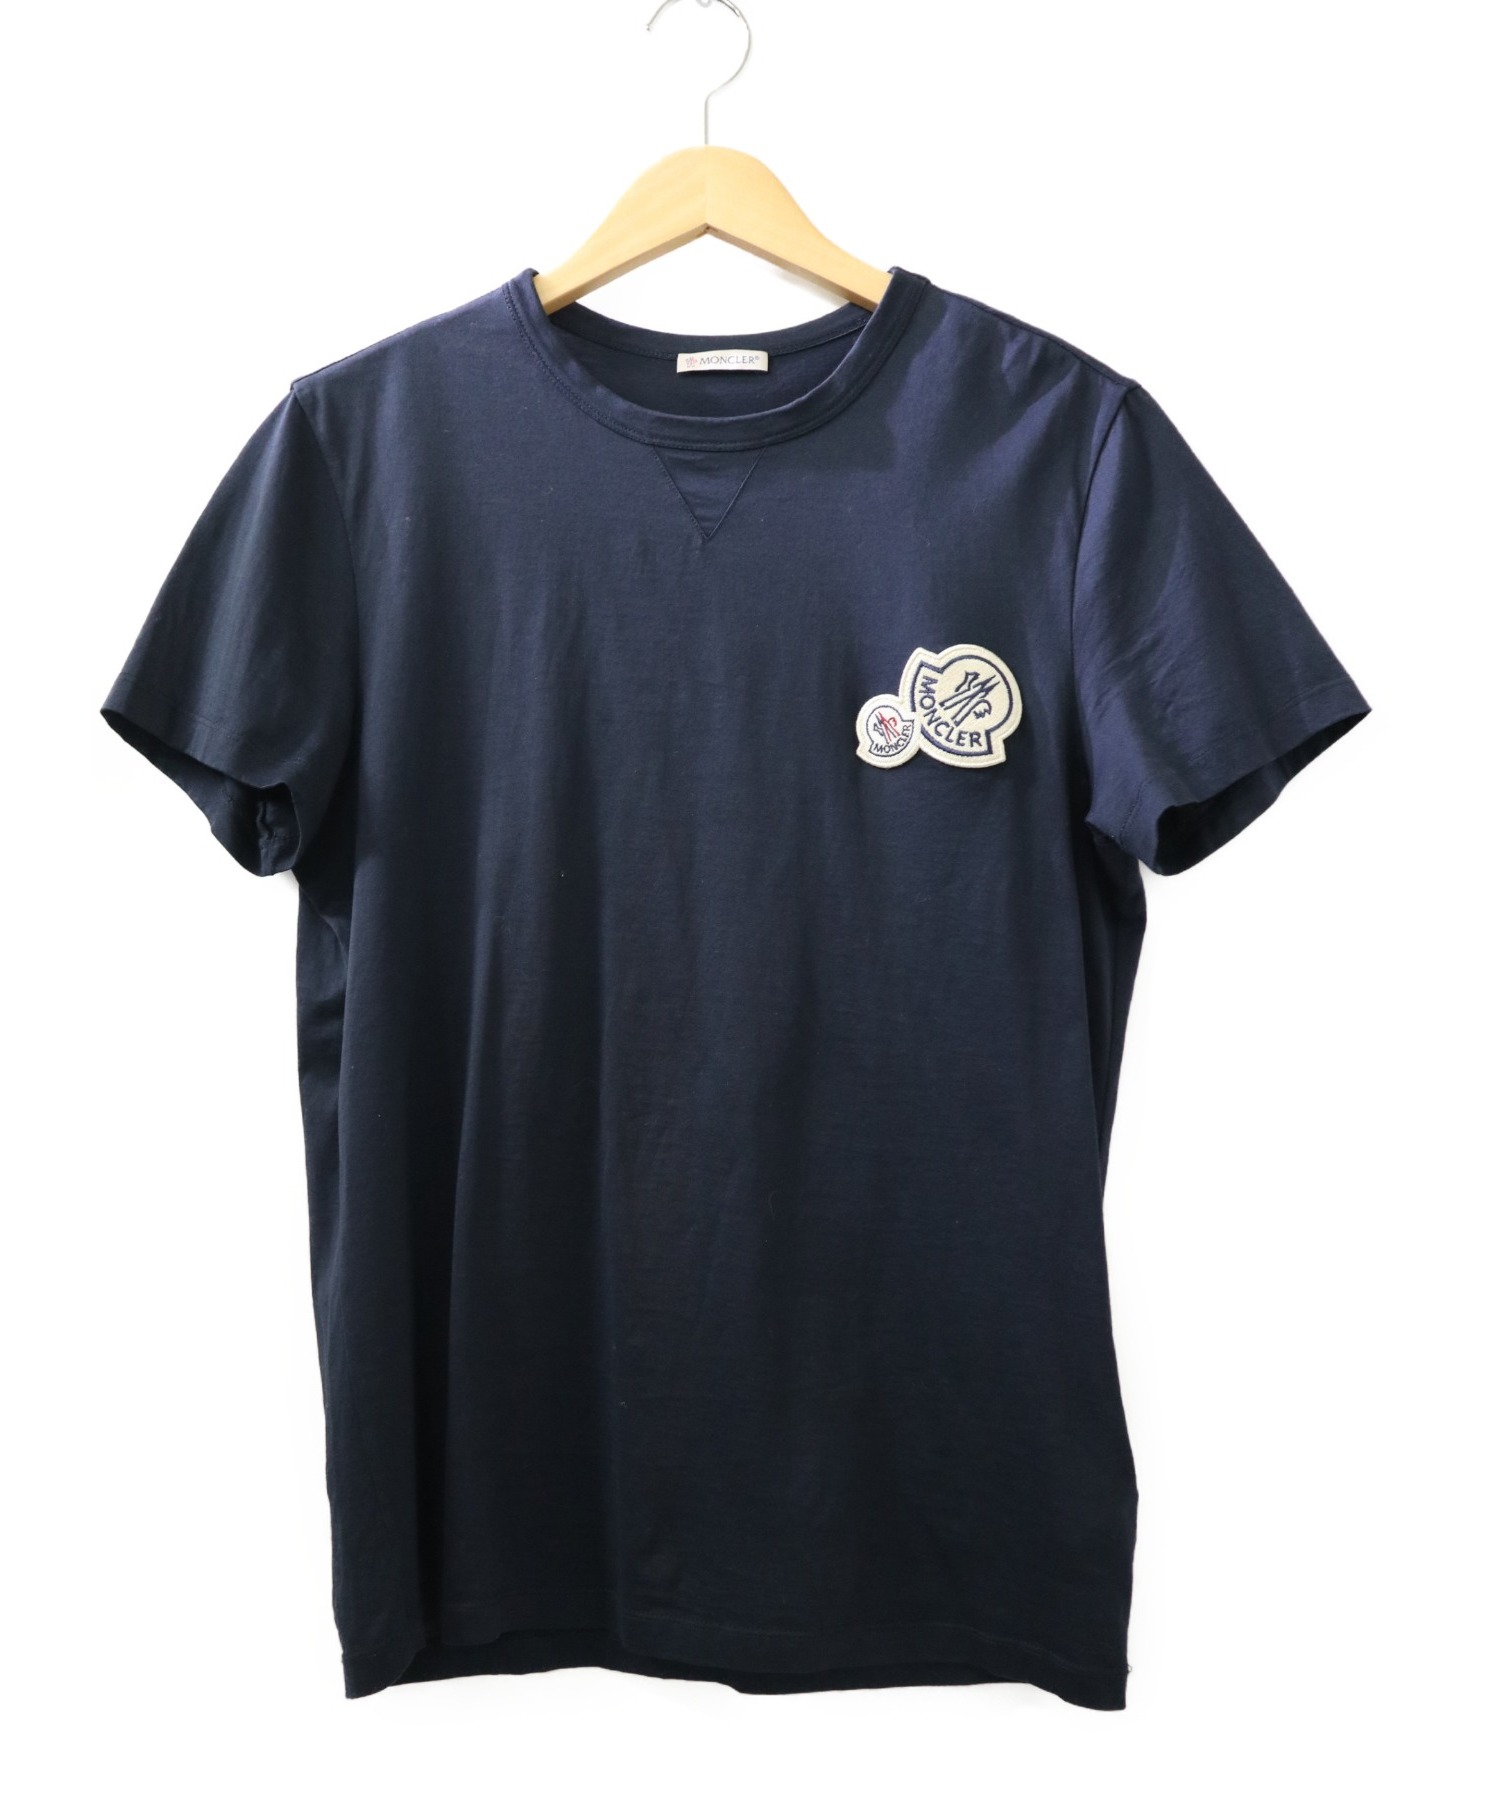 MONCLER (モンクレール) ダブルワッペンTシャツ ネイビー サイズ:S 20SS